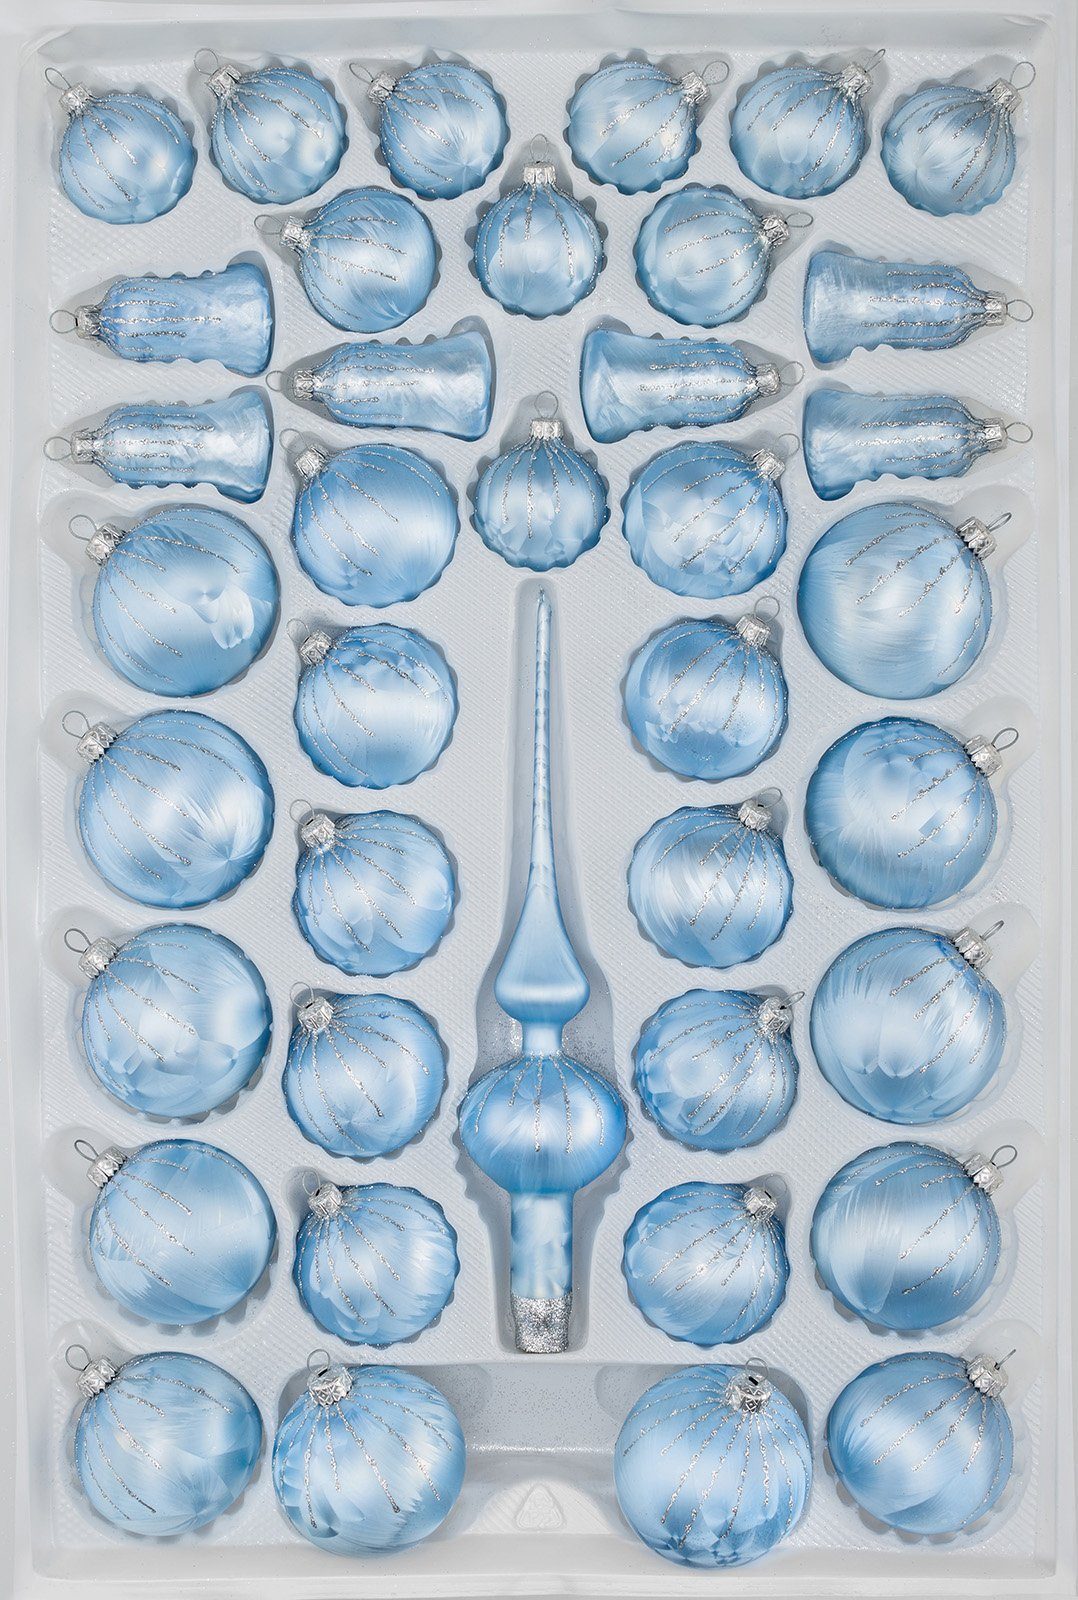 Navidacio Ice 39 Glas-Weihnachtskugeln tlg. Silber Blau Regen Set in Weihnachtsbaumkugel